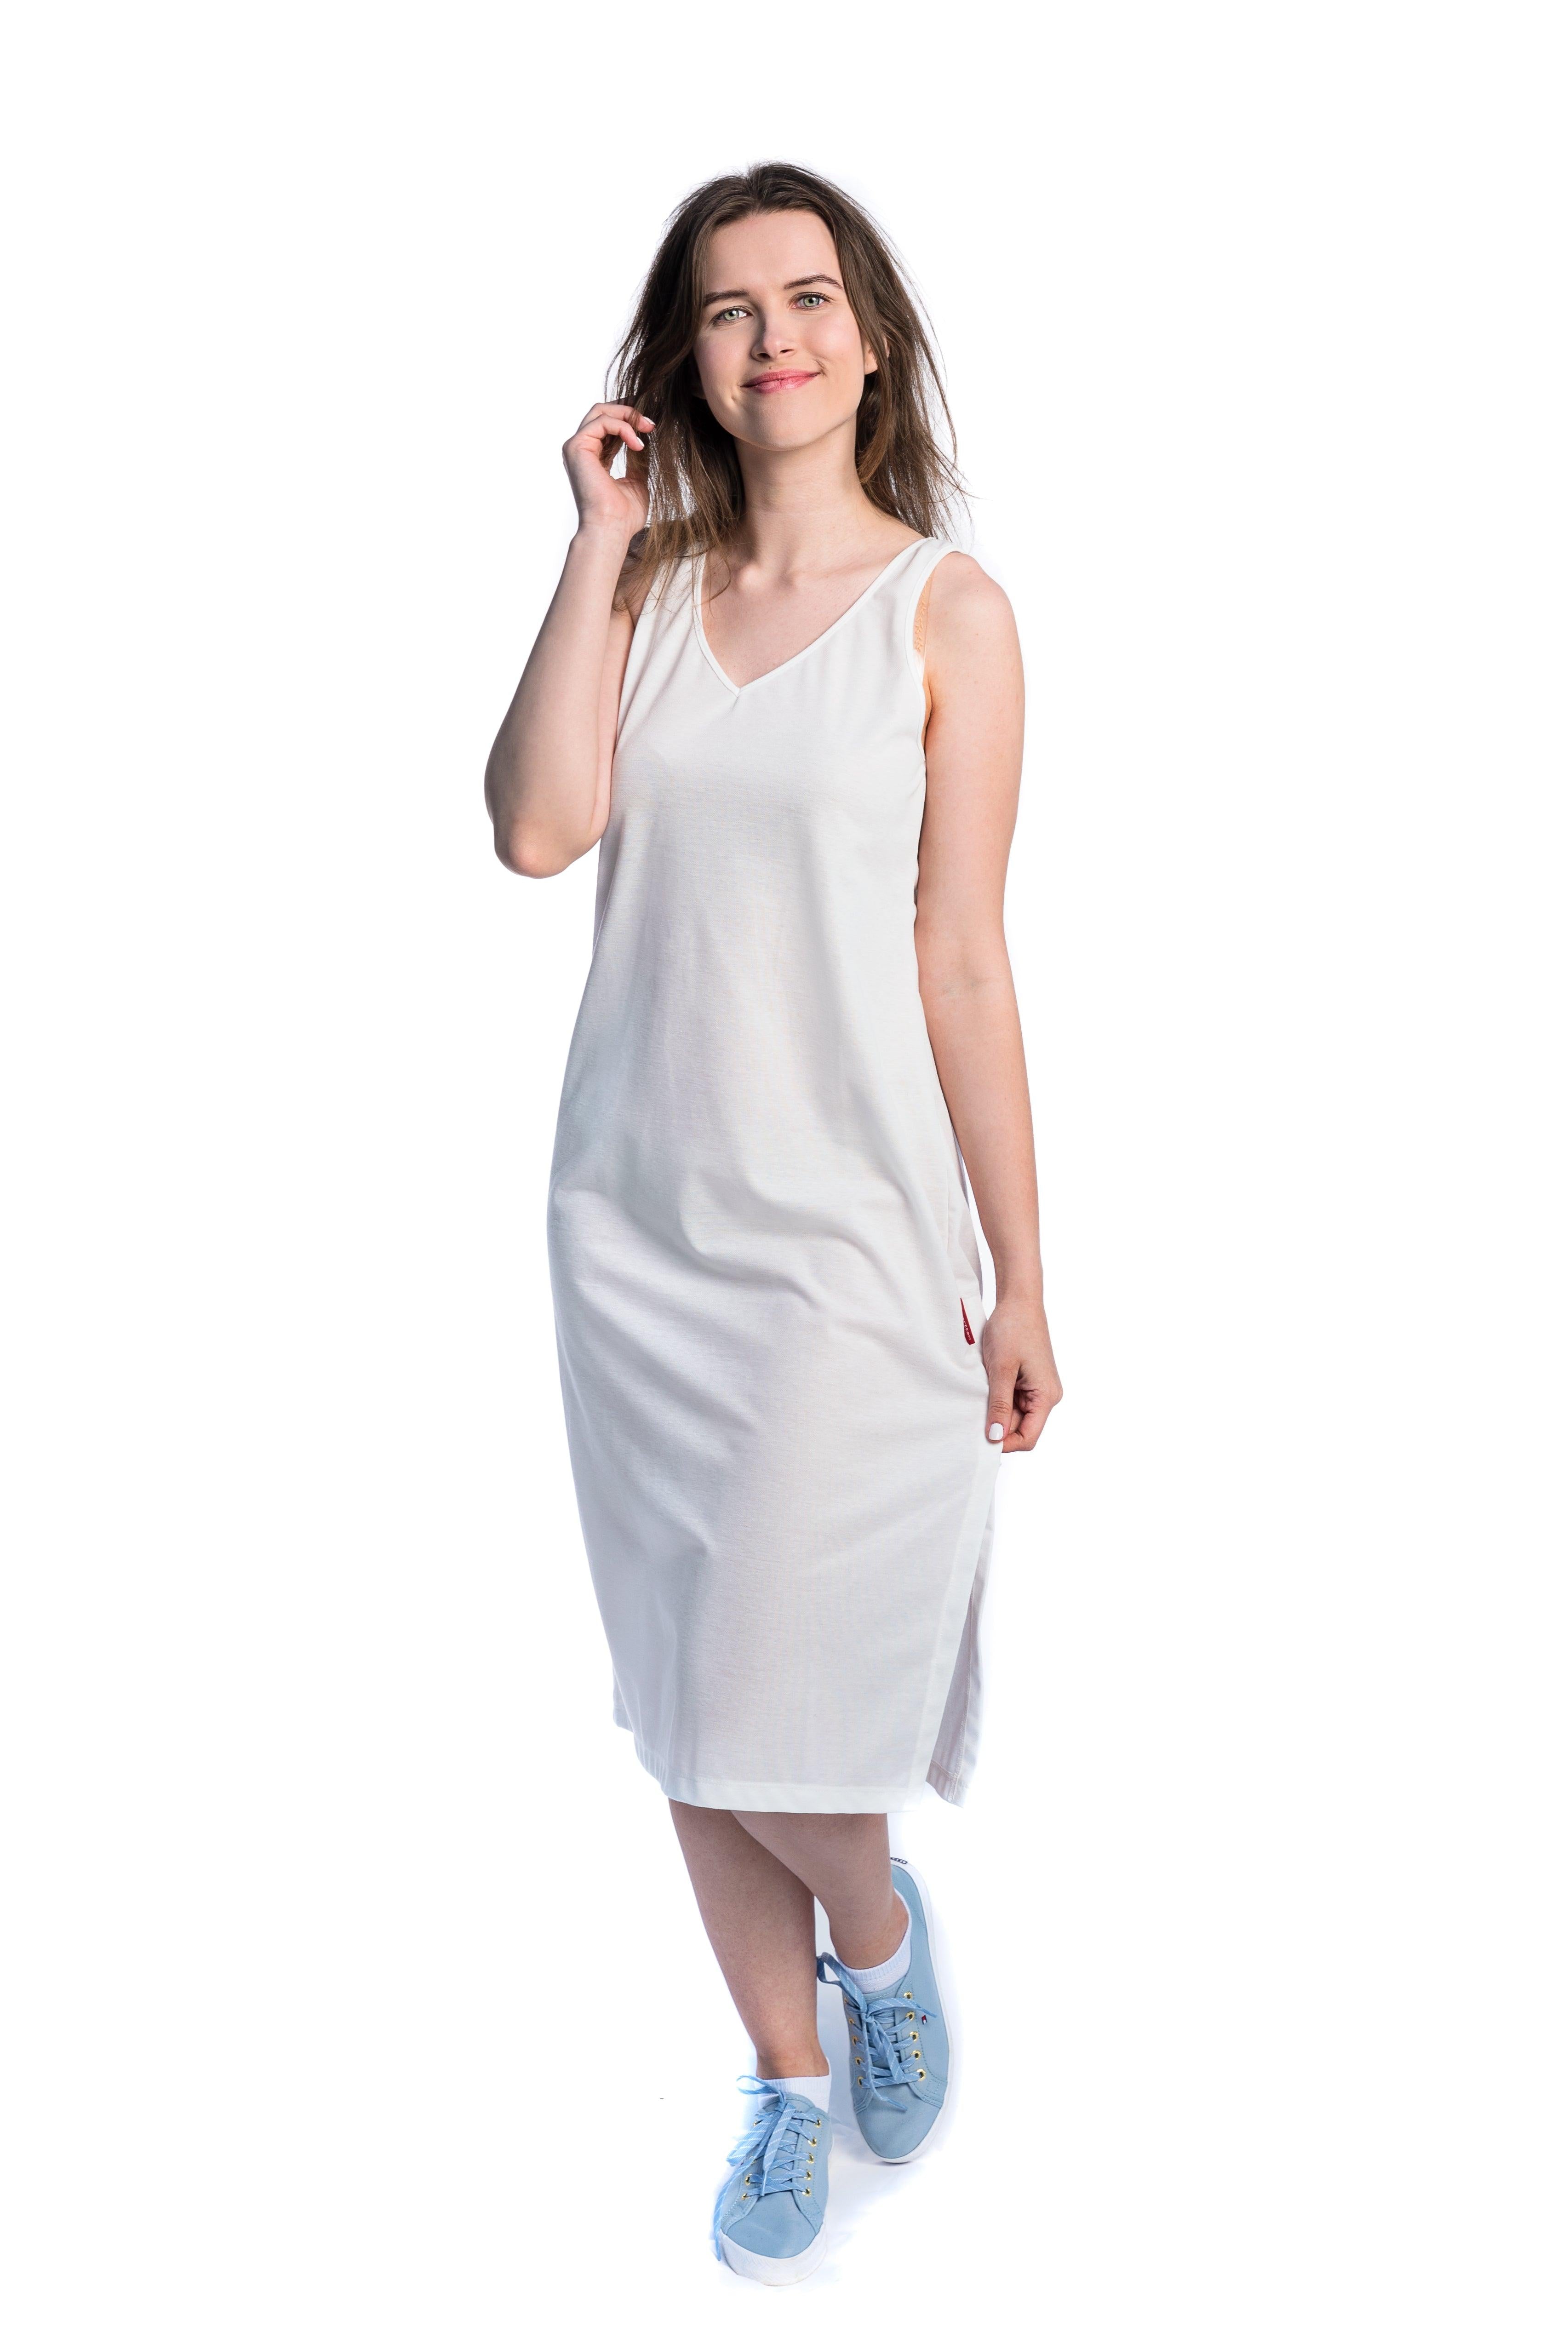 Smarttan valge läbipäevituv kleit - Smarttan